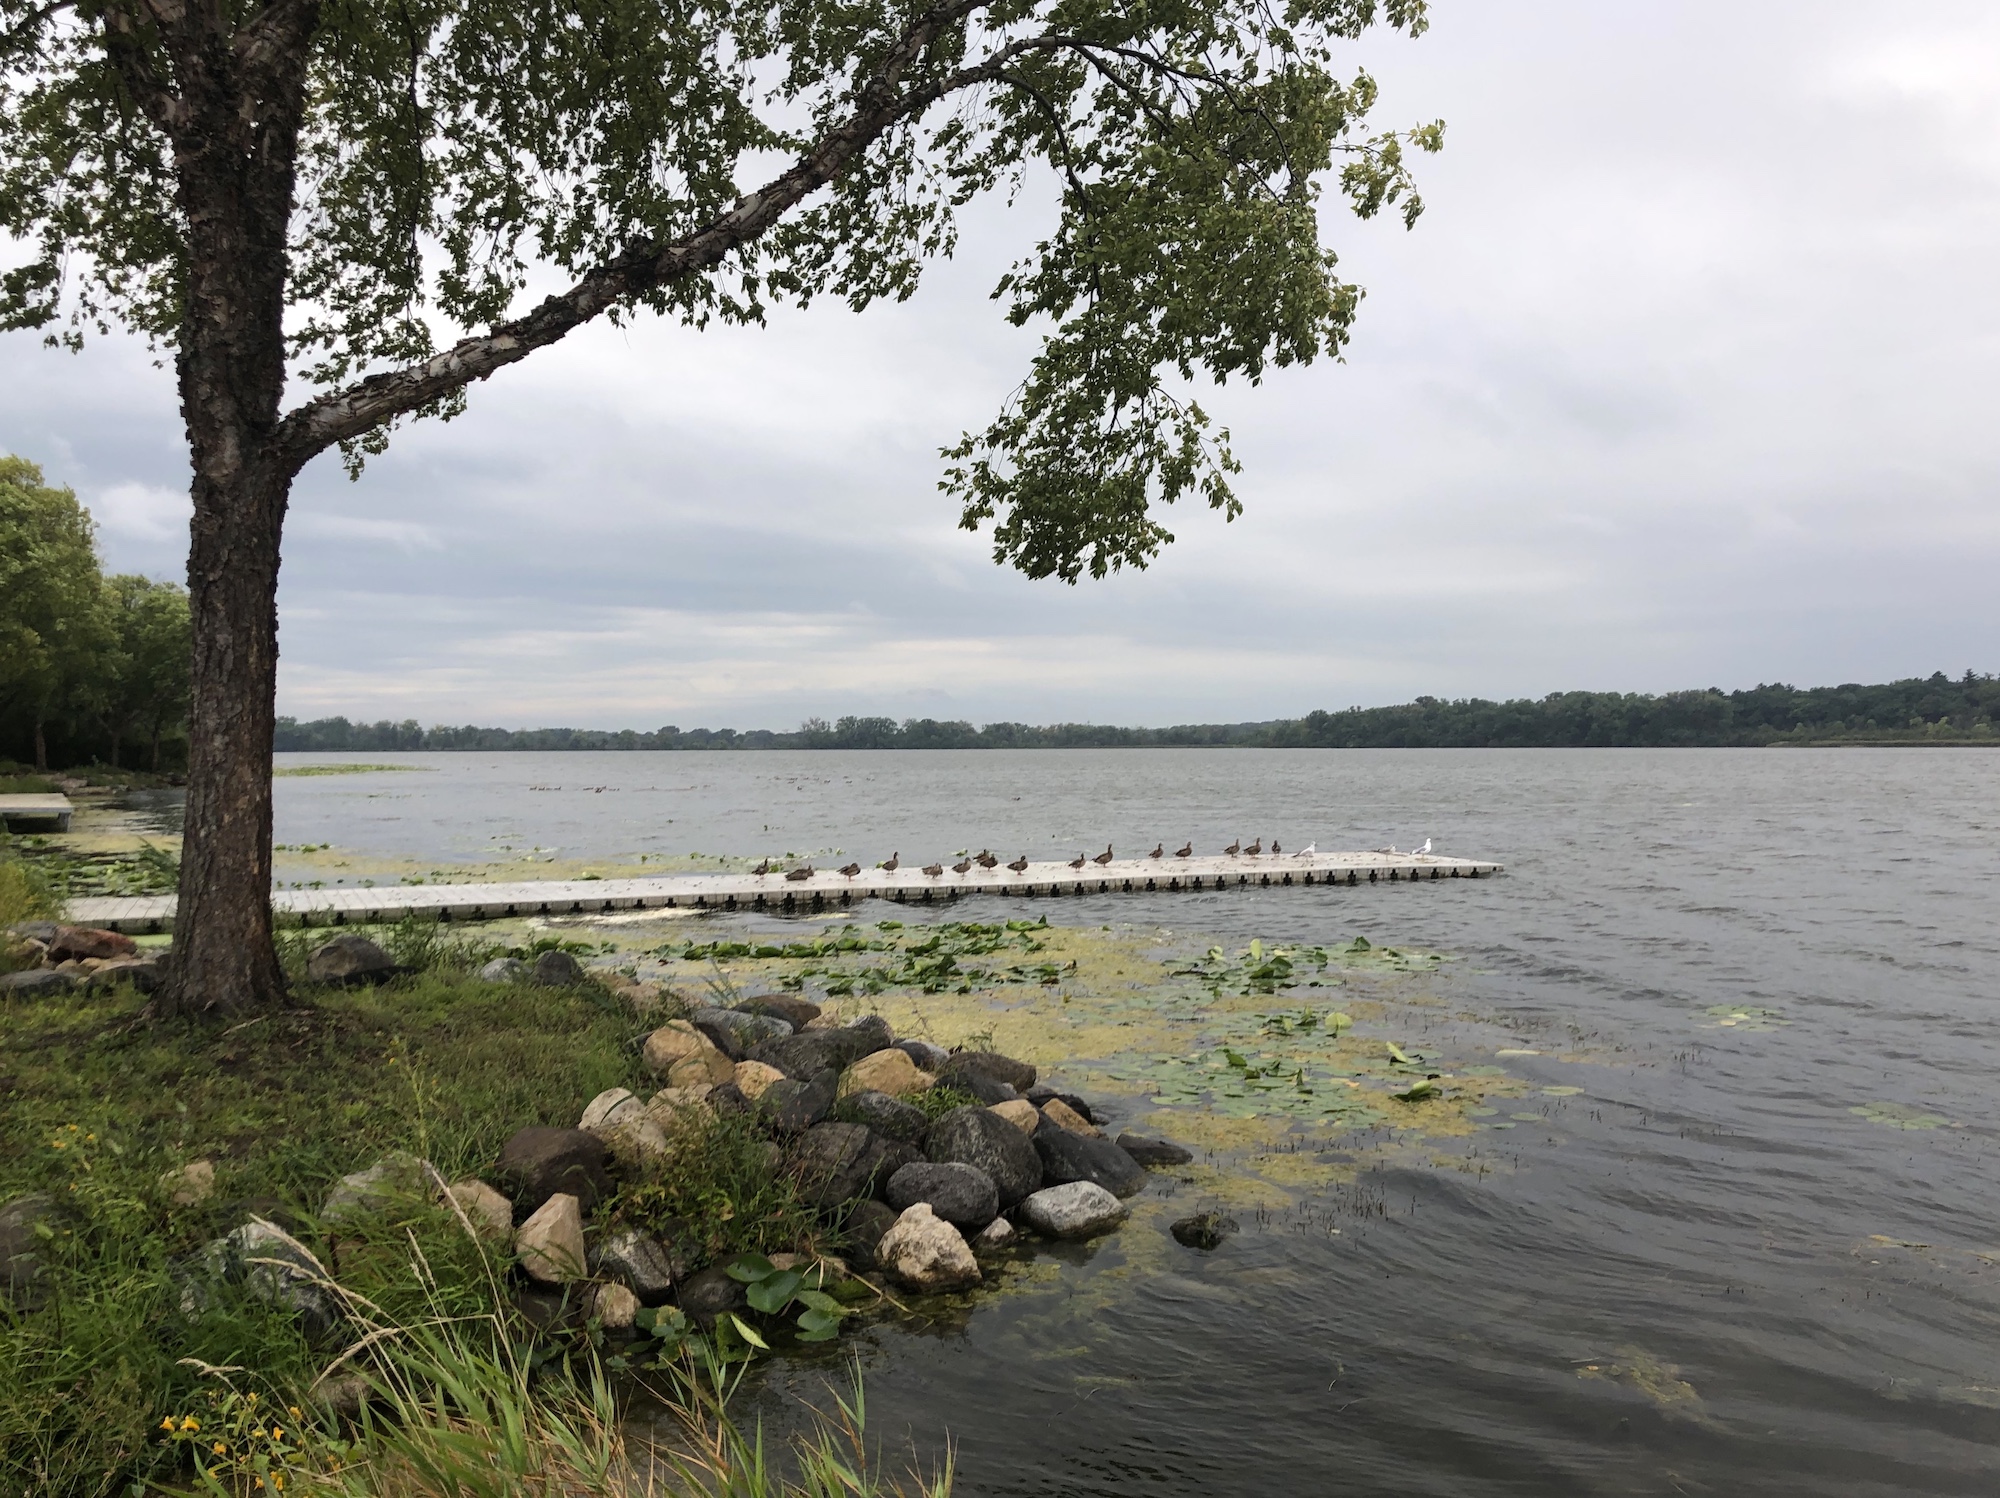 Lake Wingra on September 3, 2019.